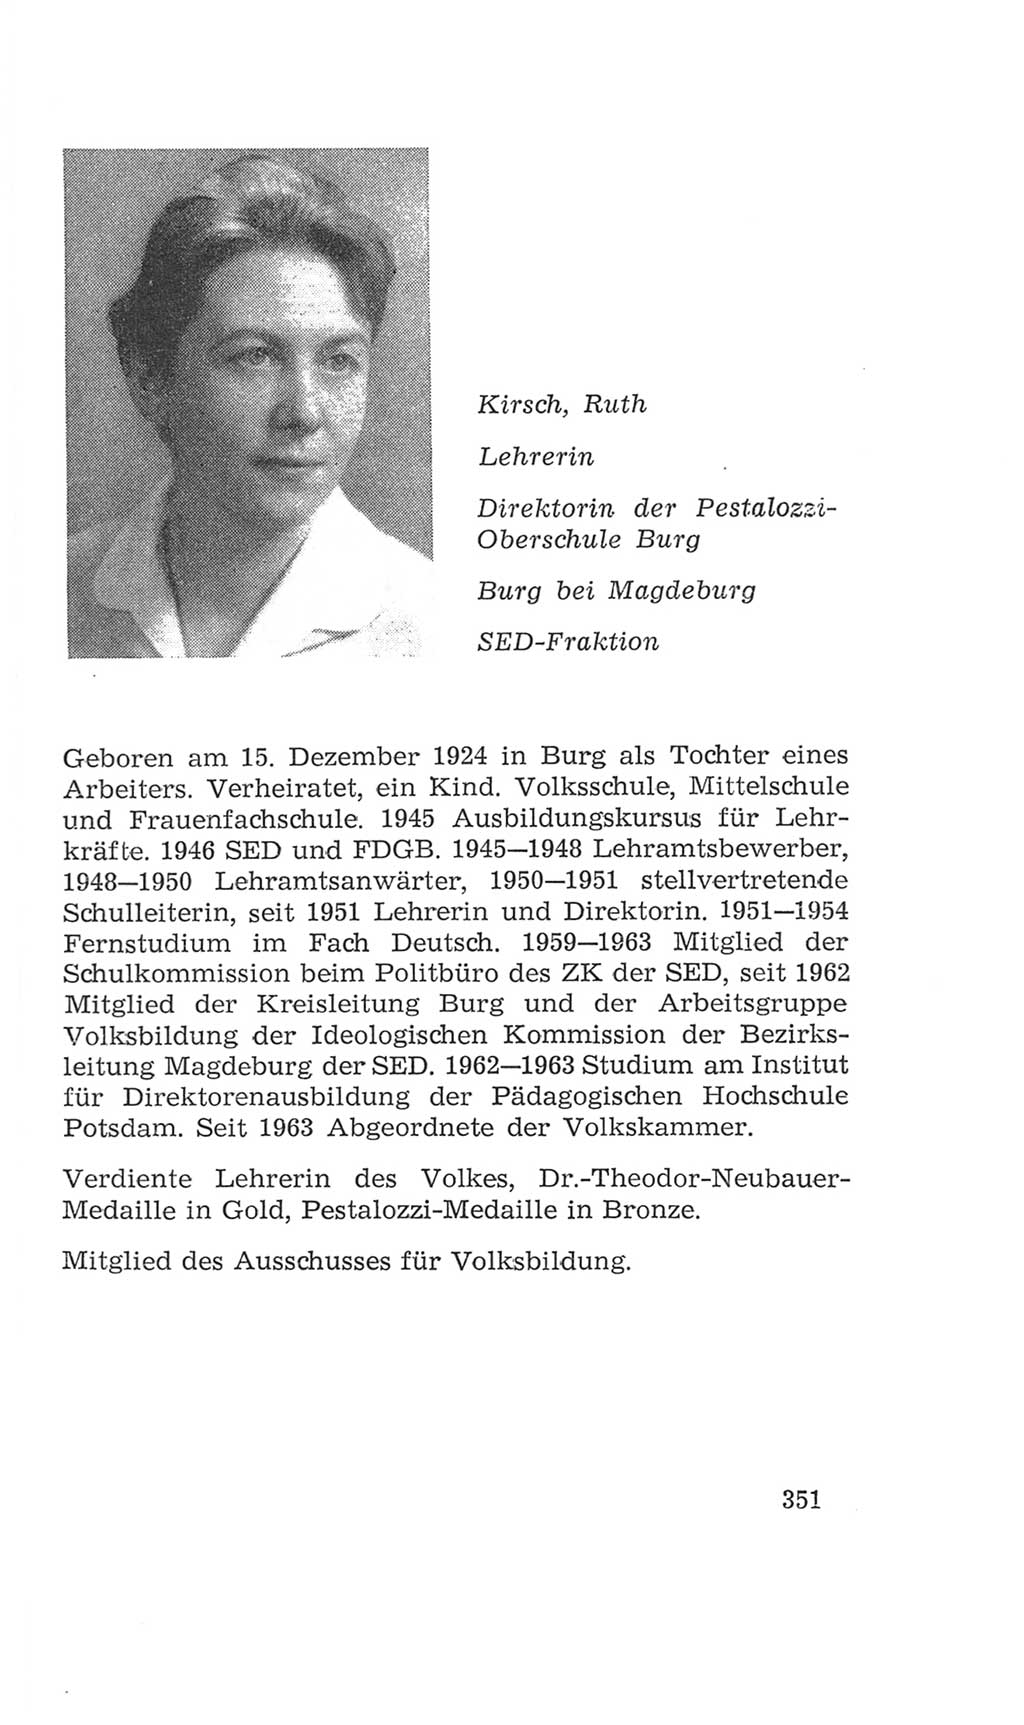 Volkskammer (VK) der Deutschen Demokratischen Republik (DDR), 4. Wahlperiode 1963-1967, Seite 351 (VK. DDR 4. WP. 1963-1967, S. 351)